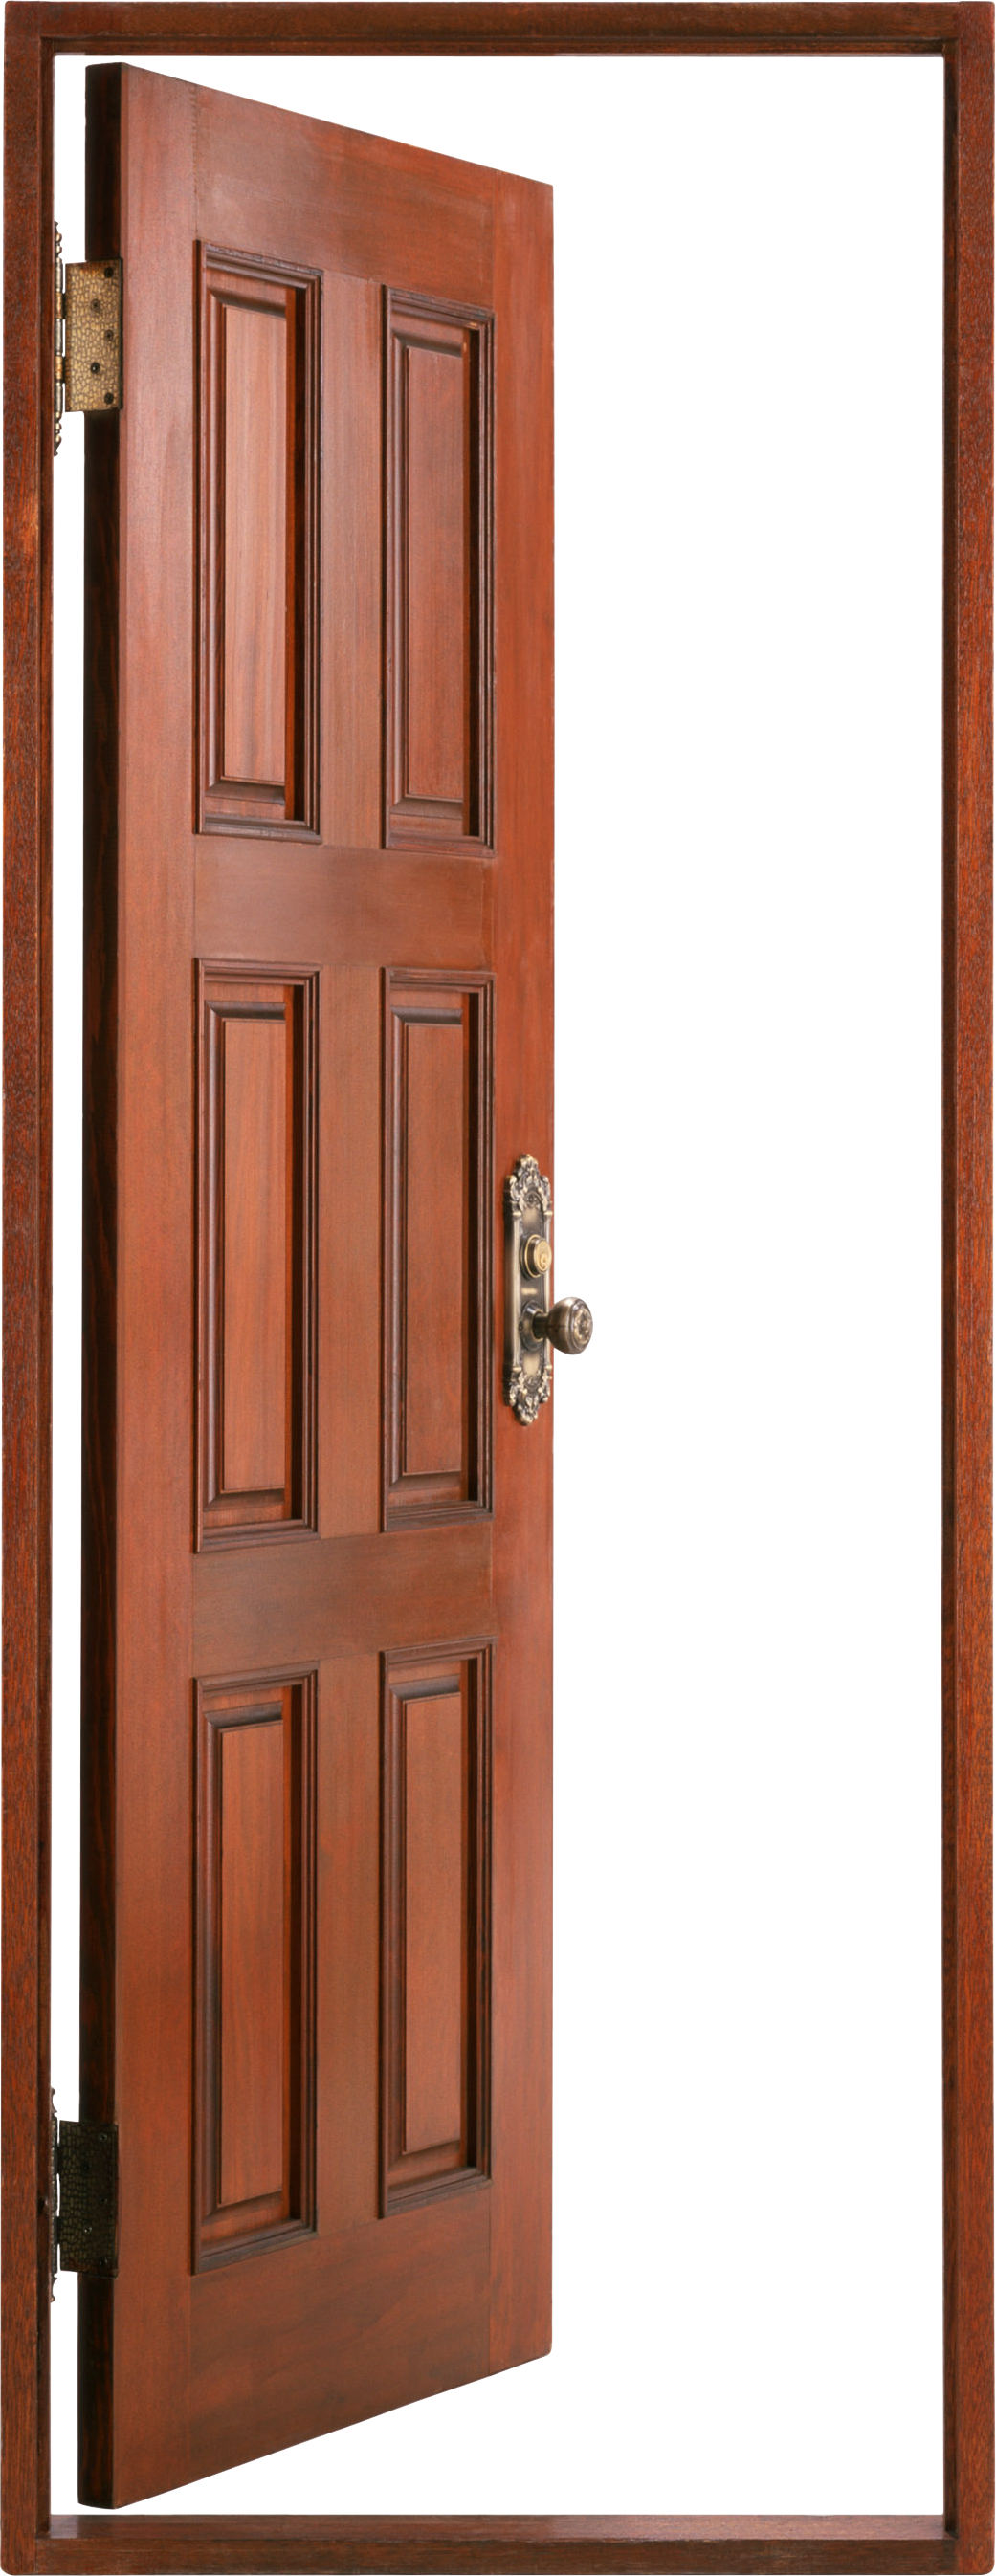 Open Door PNG Transparent, The Door Is Opening, Open Door, The Door, Opening  PNG Image For Free Download